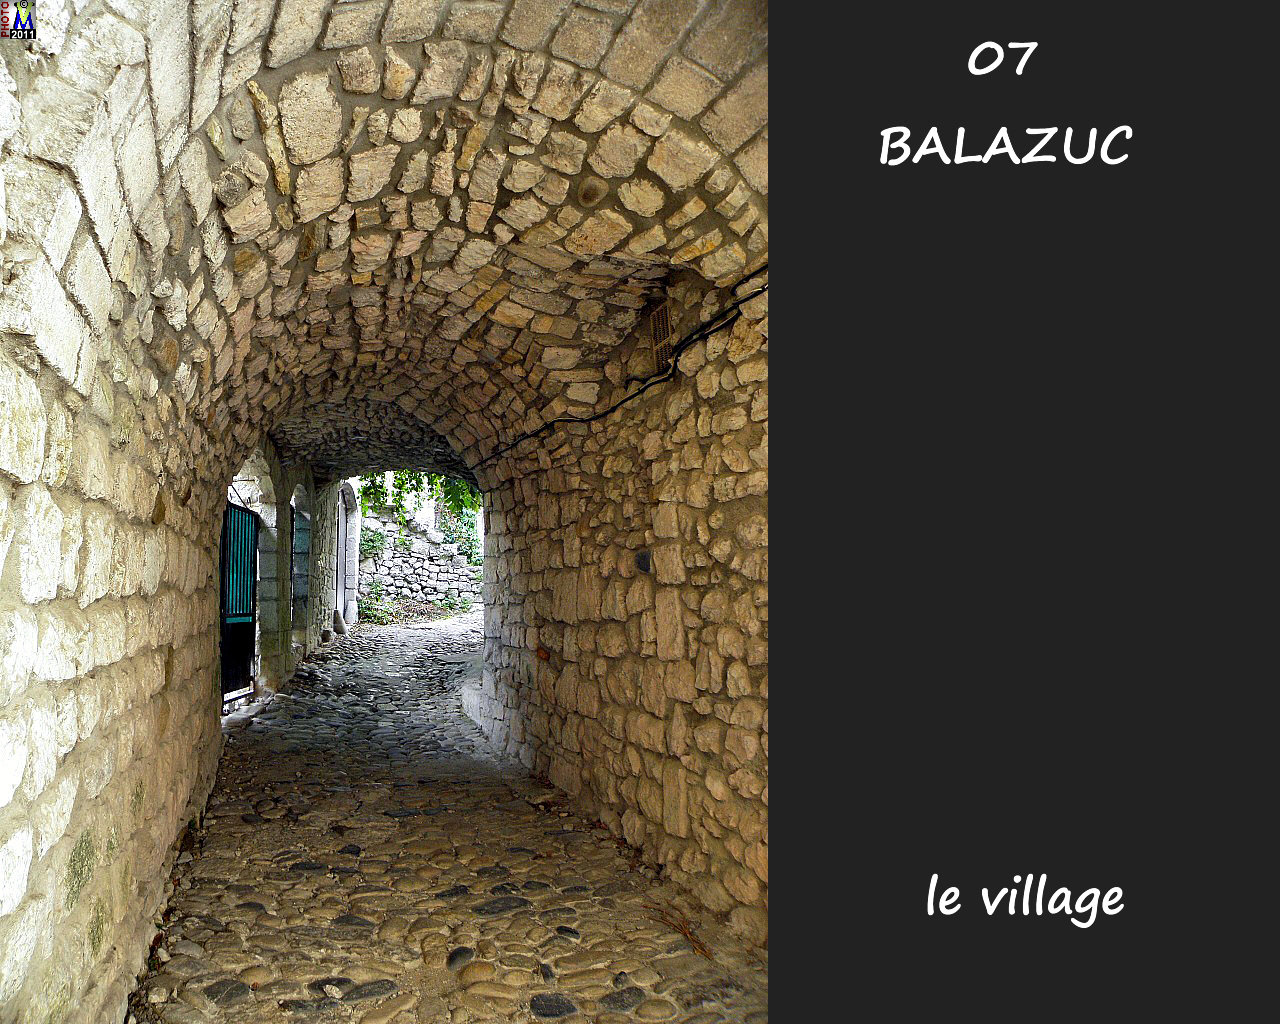 07BALAZUC_village_128.jpg